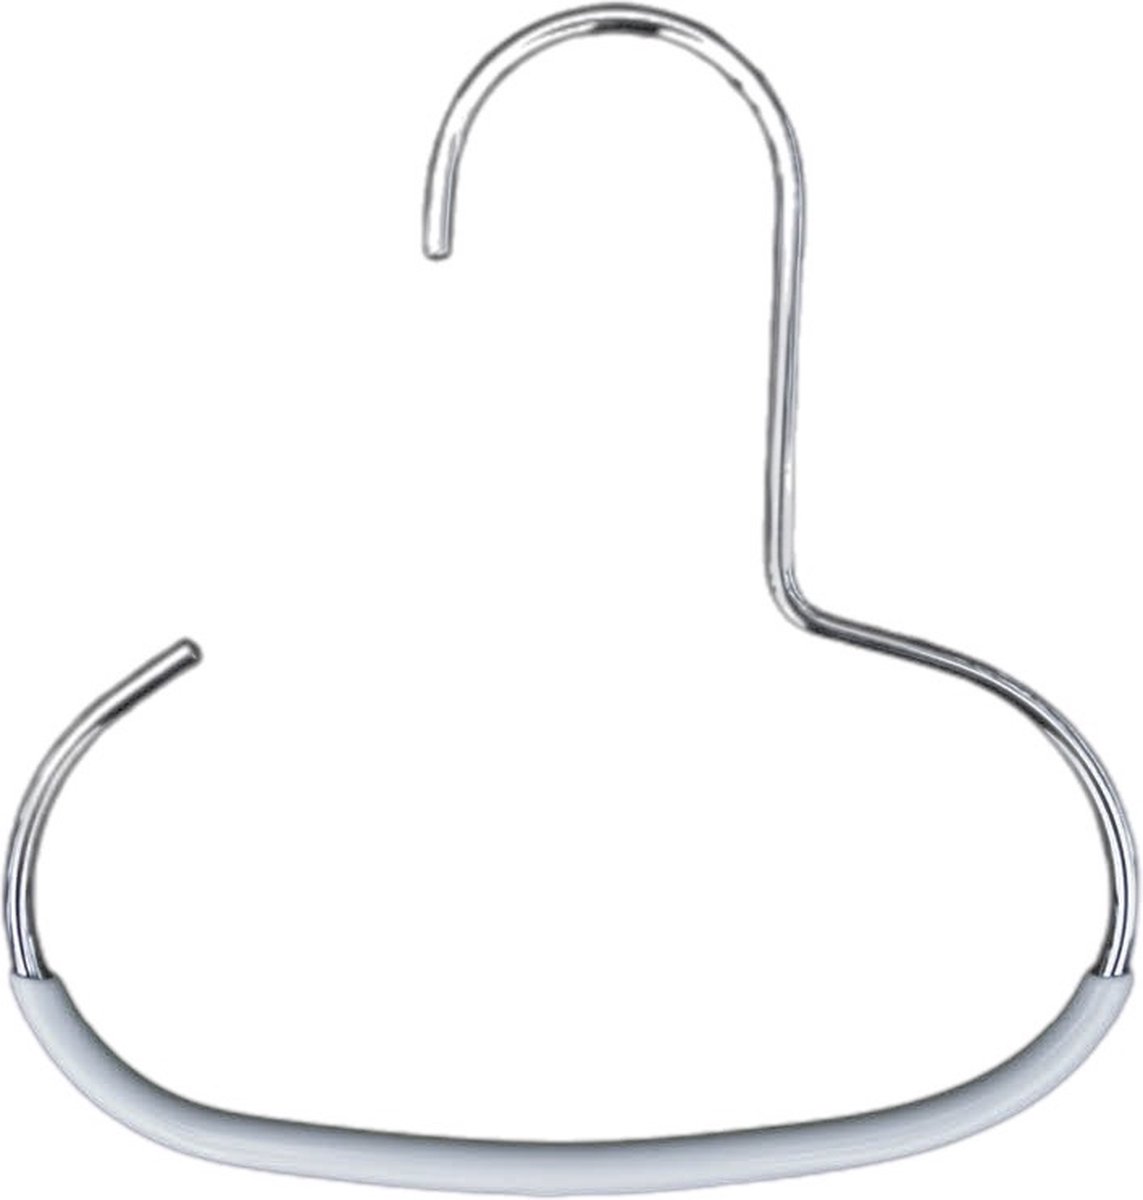 TopHangers [Set van 3] - Praktische metalen accessoire hanger voor sjaals / stropdassen / petten / sieraden / riemen met zilveren anti-slip coating | Gecertificeerd als 'Ecofriendly' en 'Skinfriendly' | 'Mawa G1'